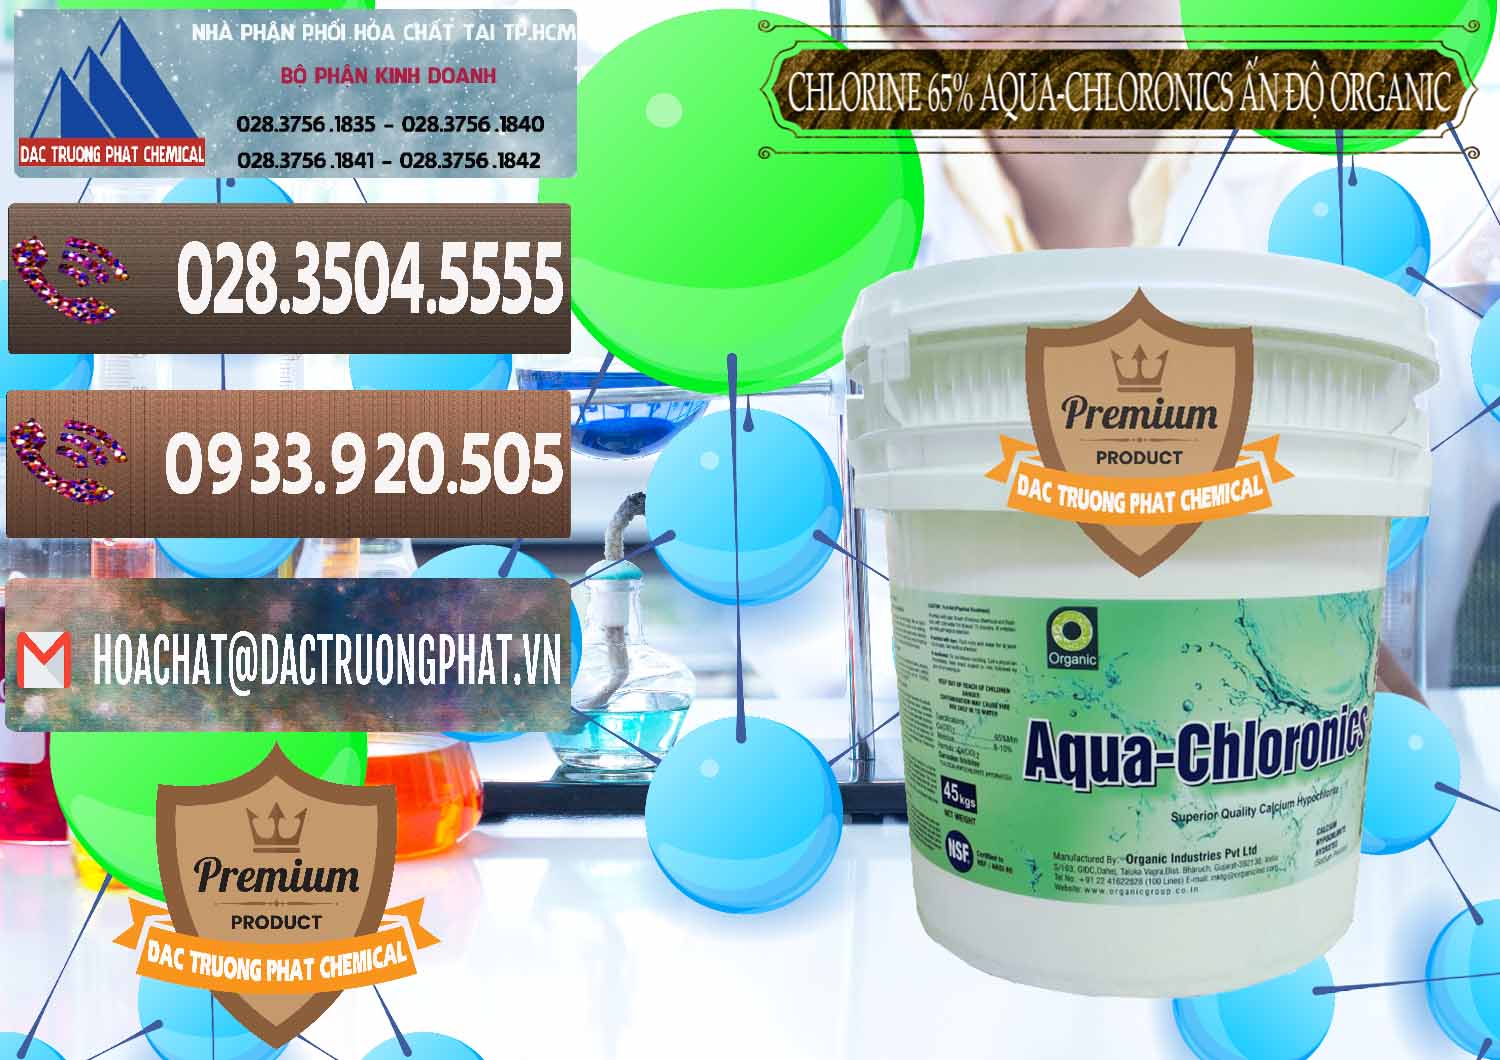 Công ty cung cấp & bán Chlorine – Clorin 65% Aqua-Chloronics Ấn Độ Organic India - 0210 - Đơn vị kinh doanh - phân phối hóa chất tại TP.HCM - hoachatviet.net